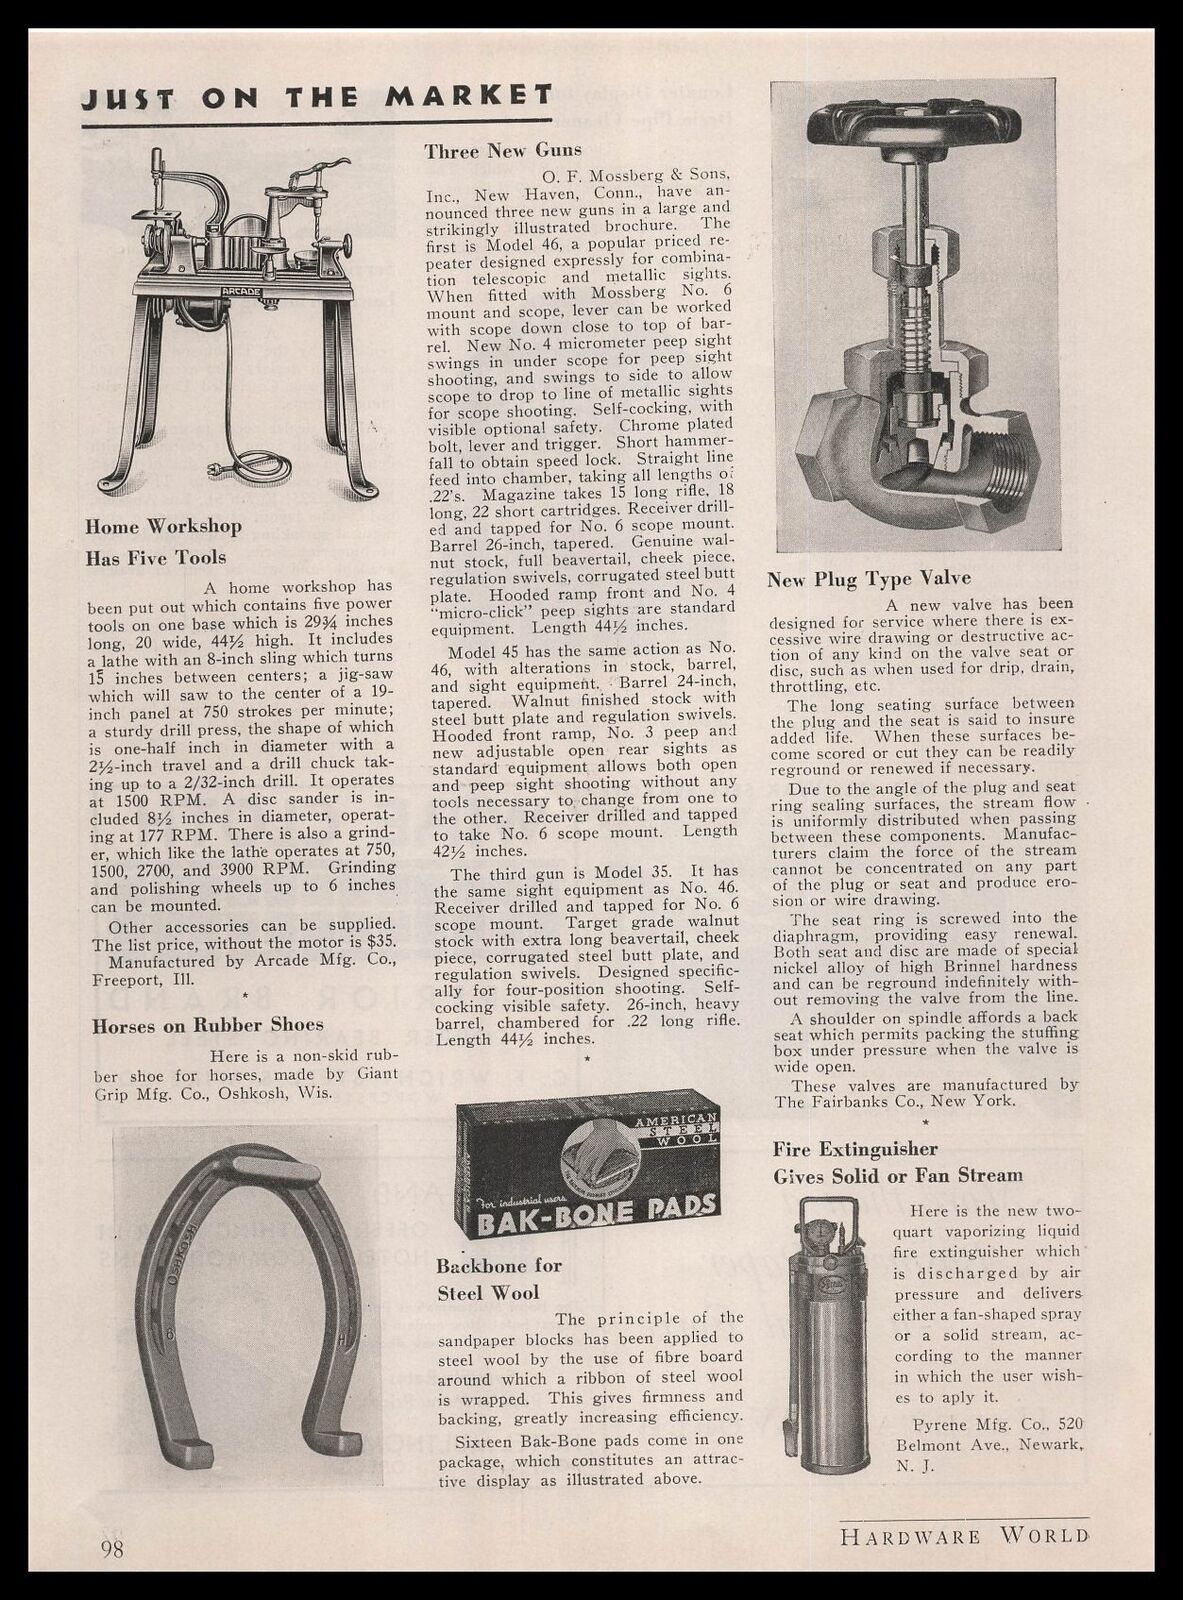 1935 Arcade Mfg Freeport Illinois 5 Tool Home Workshop Article Vintage Print Ad